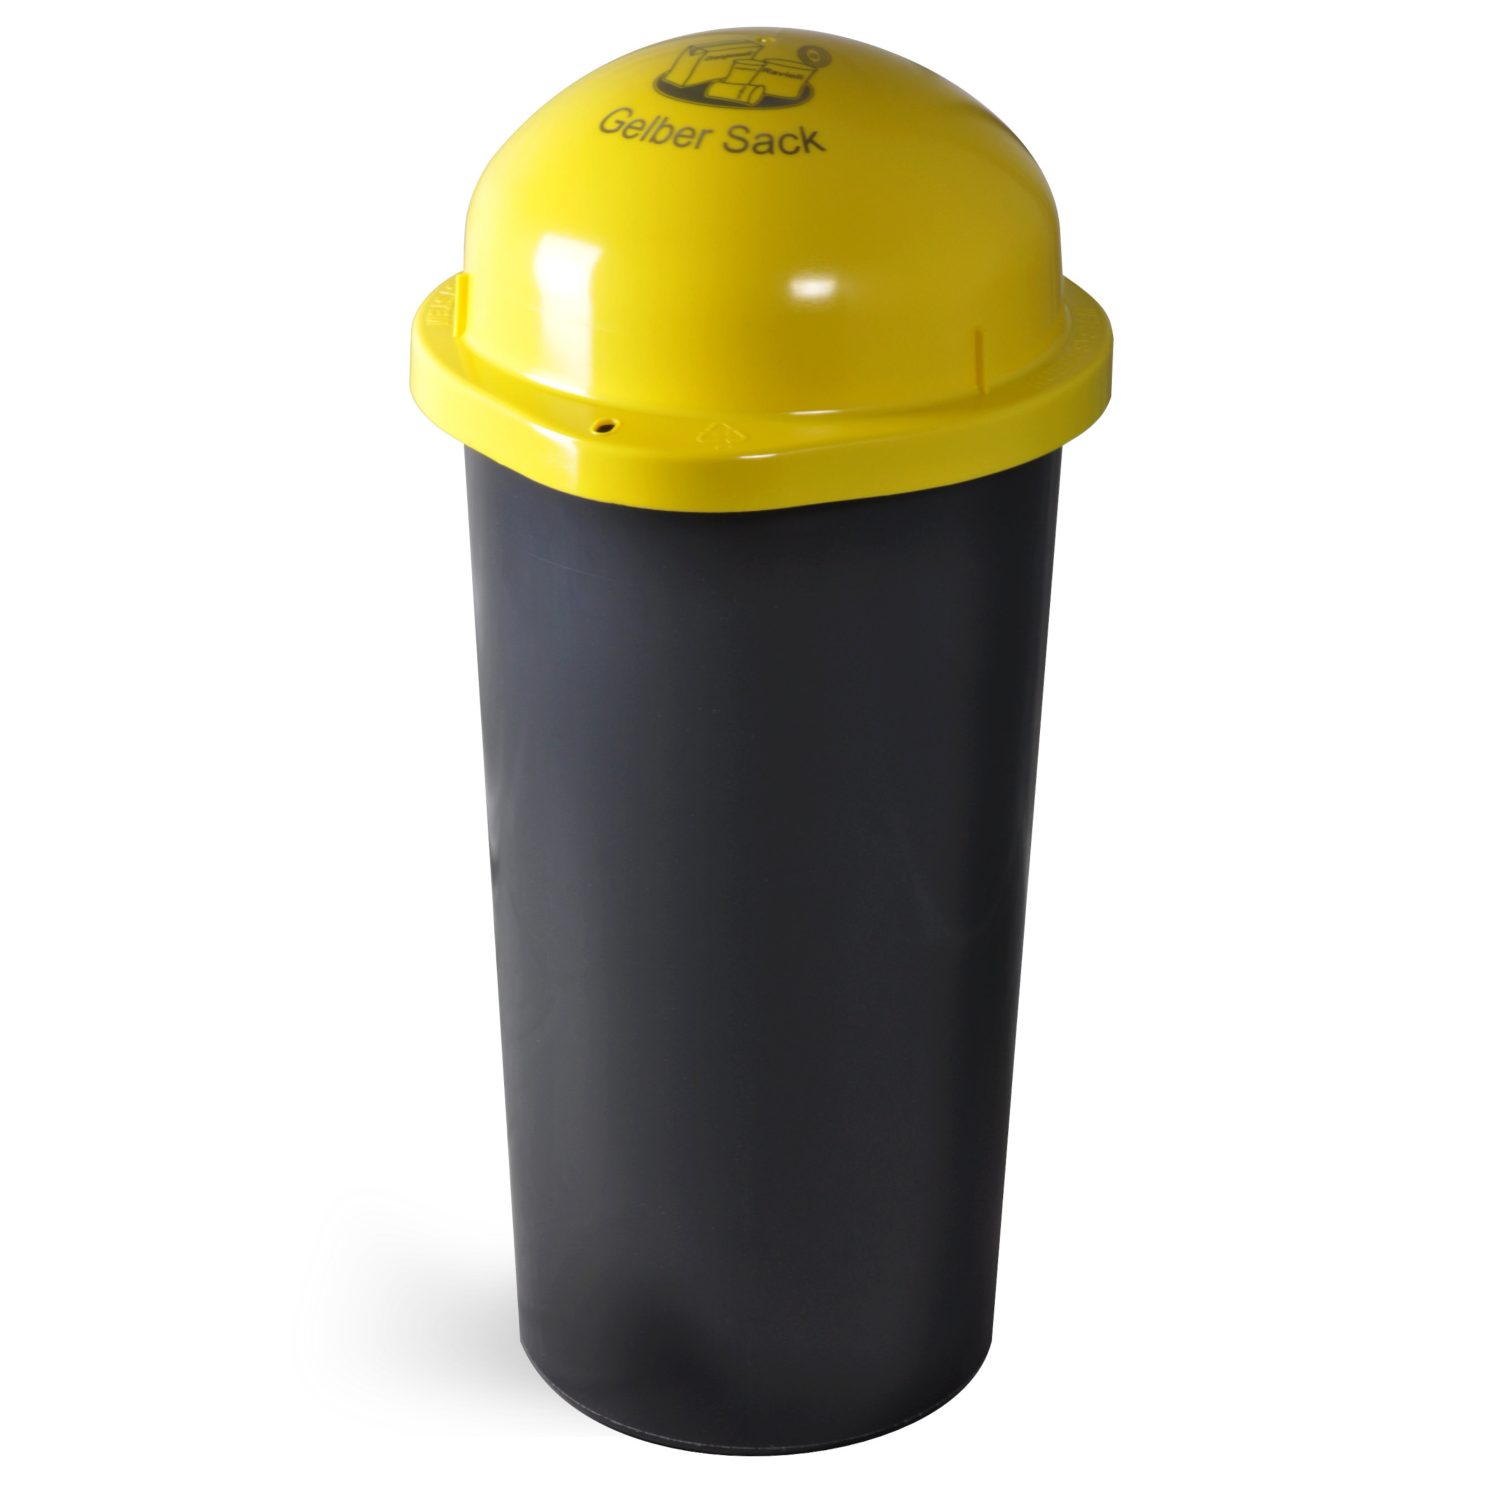 KUEFA Müllsackständer KUEFA HD LA 60L Müllsackständer mit Laserbeschriftung, Motive: Gelber Sack, Restmüll, Altpapier, Bioabfall, Pfandflaschen